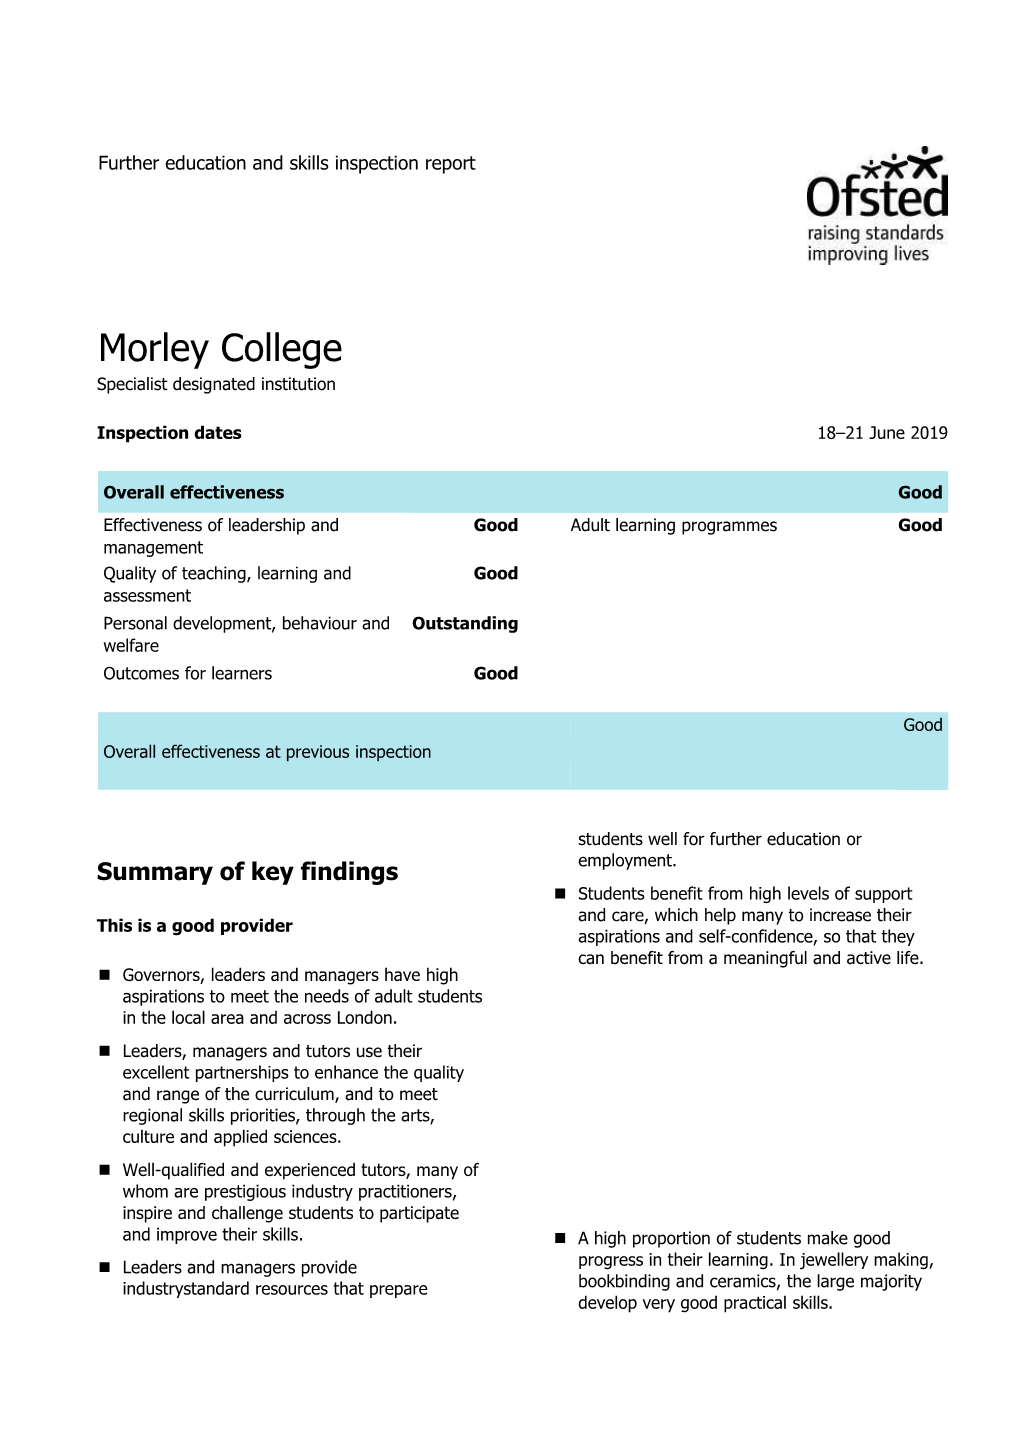 Morley College Specialist Designated Institution